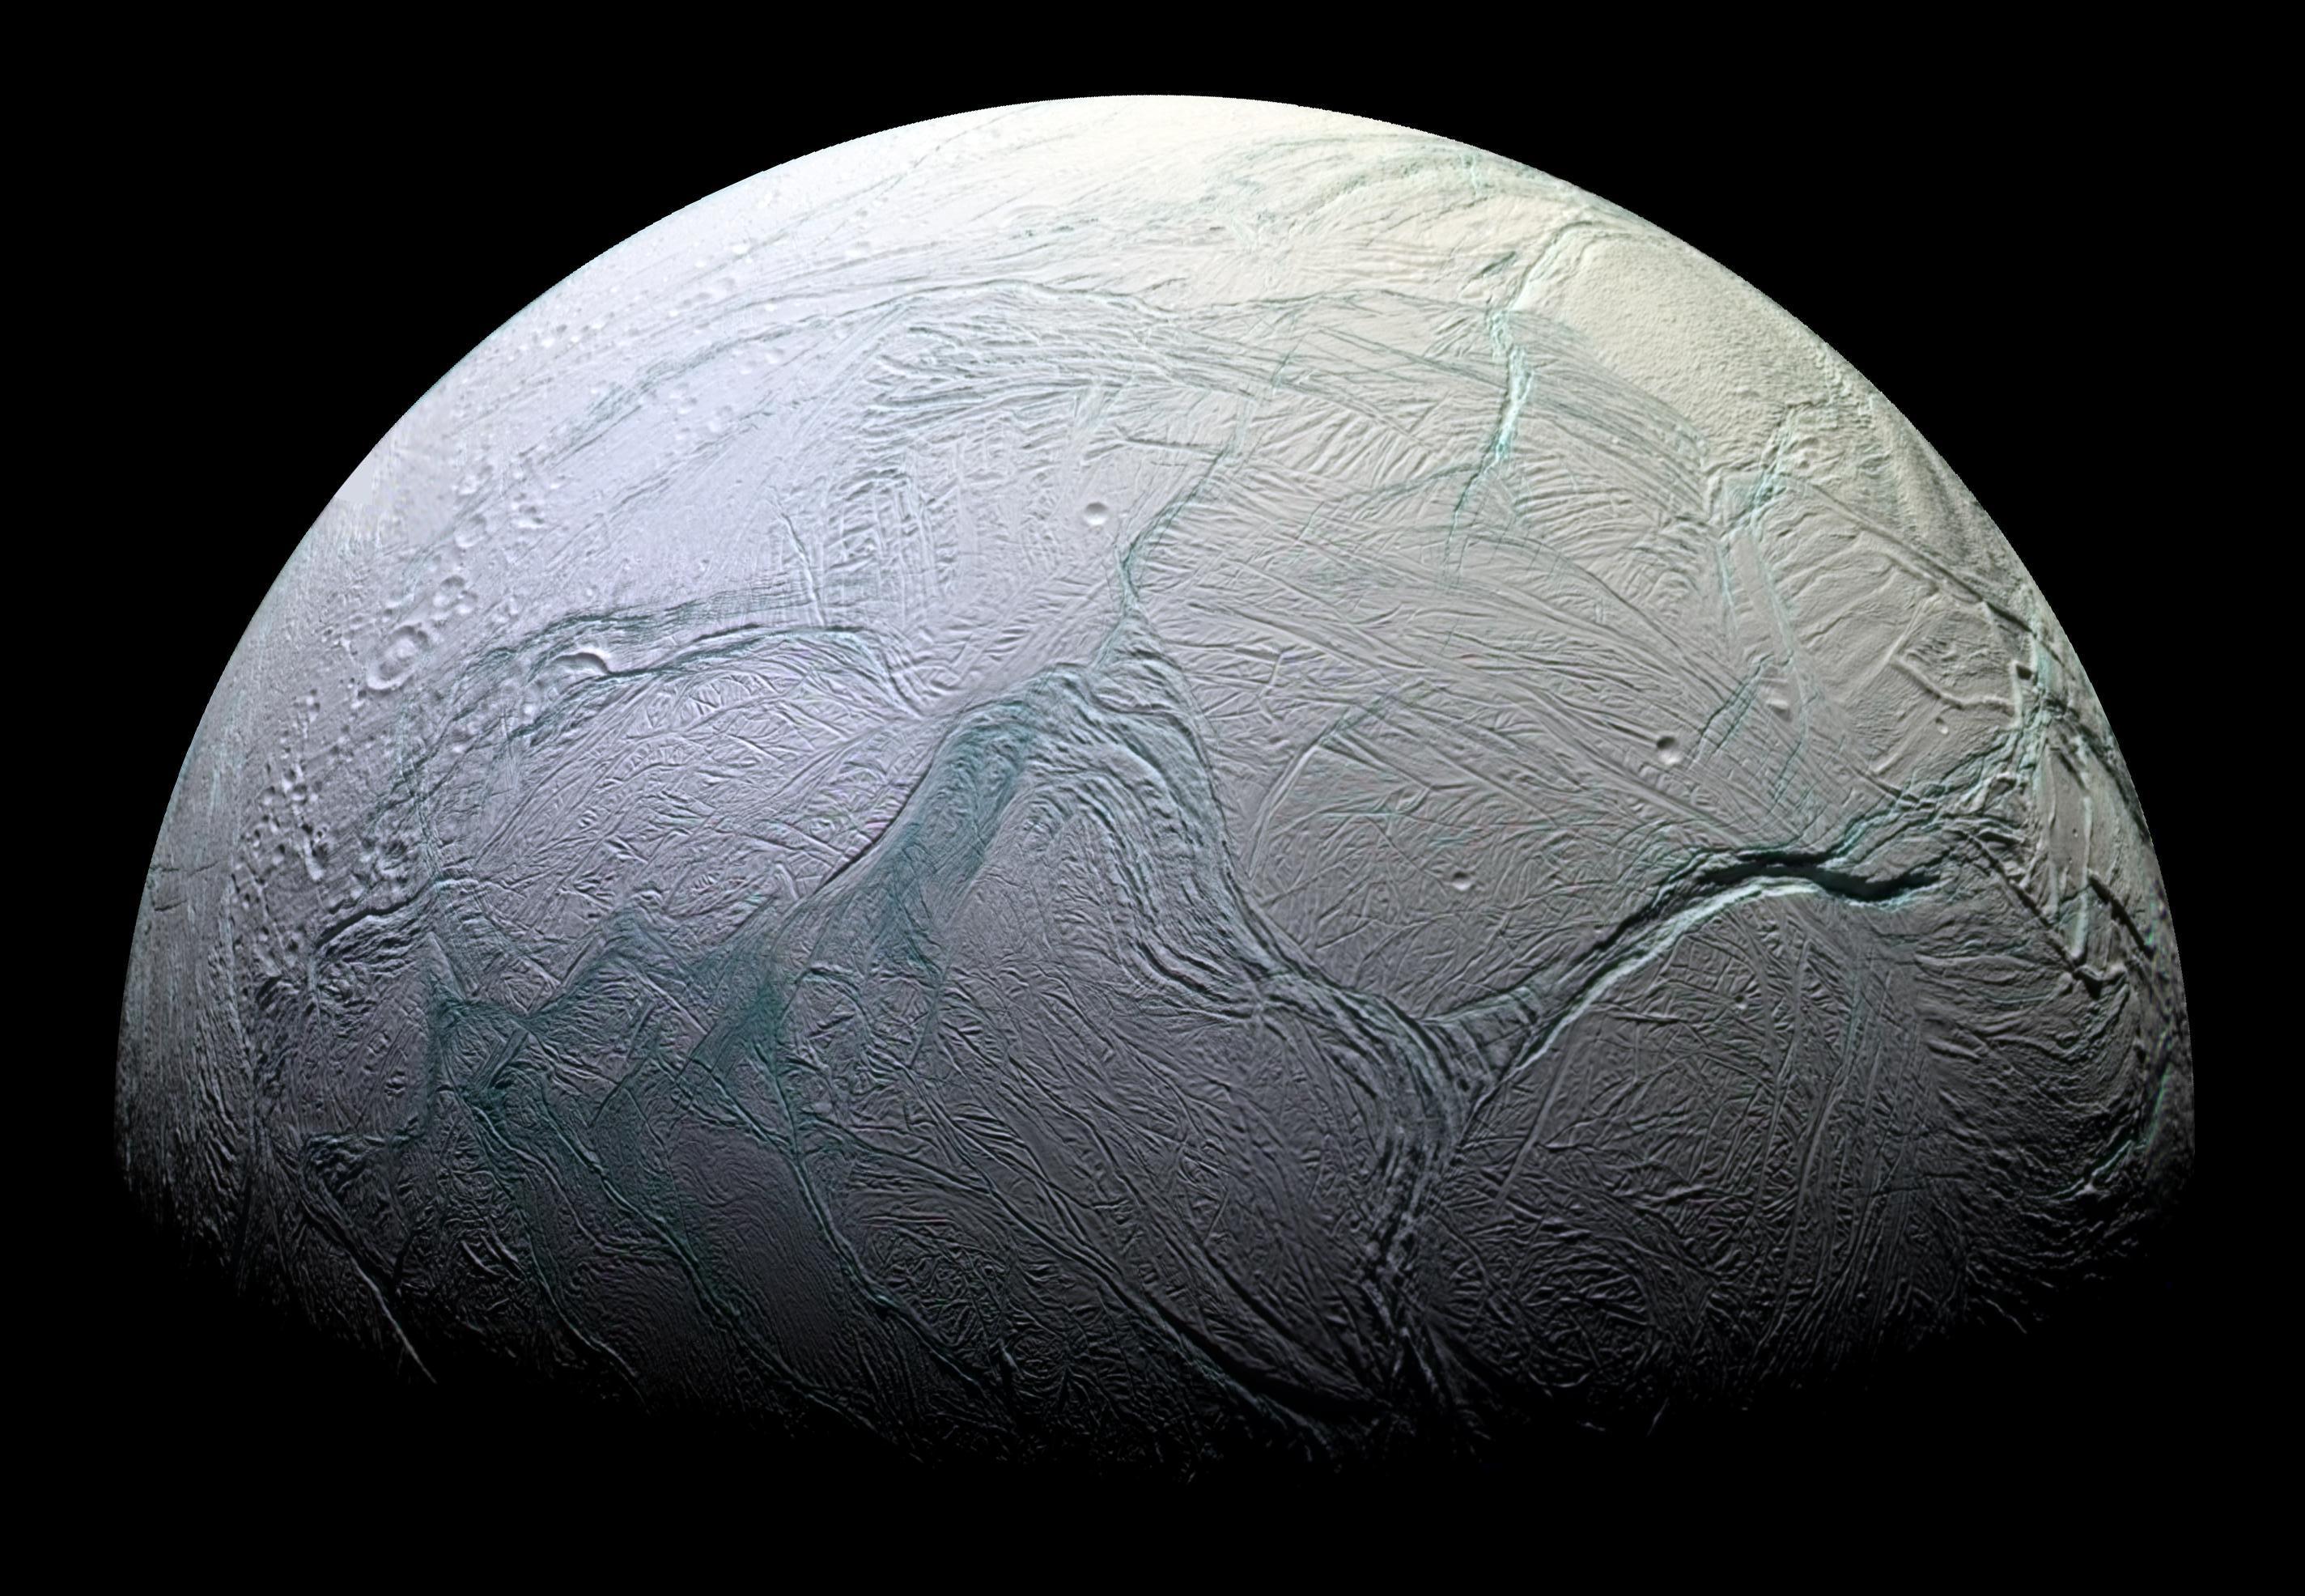 A Szaturnusz Enceladus holdja a Cassini-űrszonda felvételén. Forrás: NASA/JPL